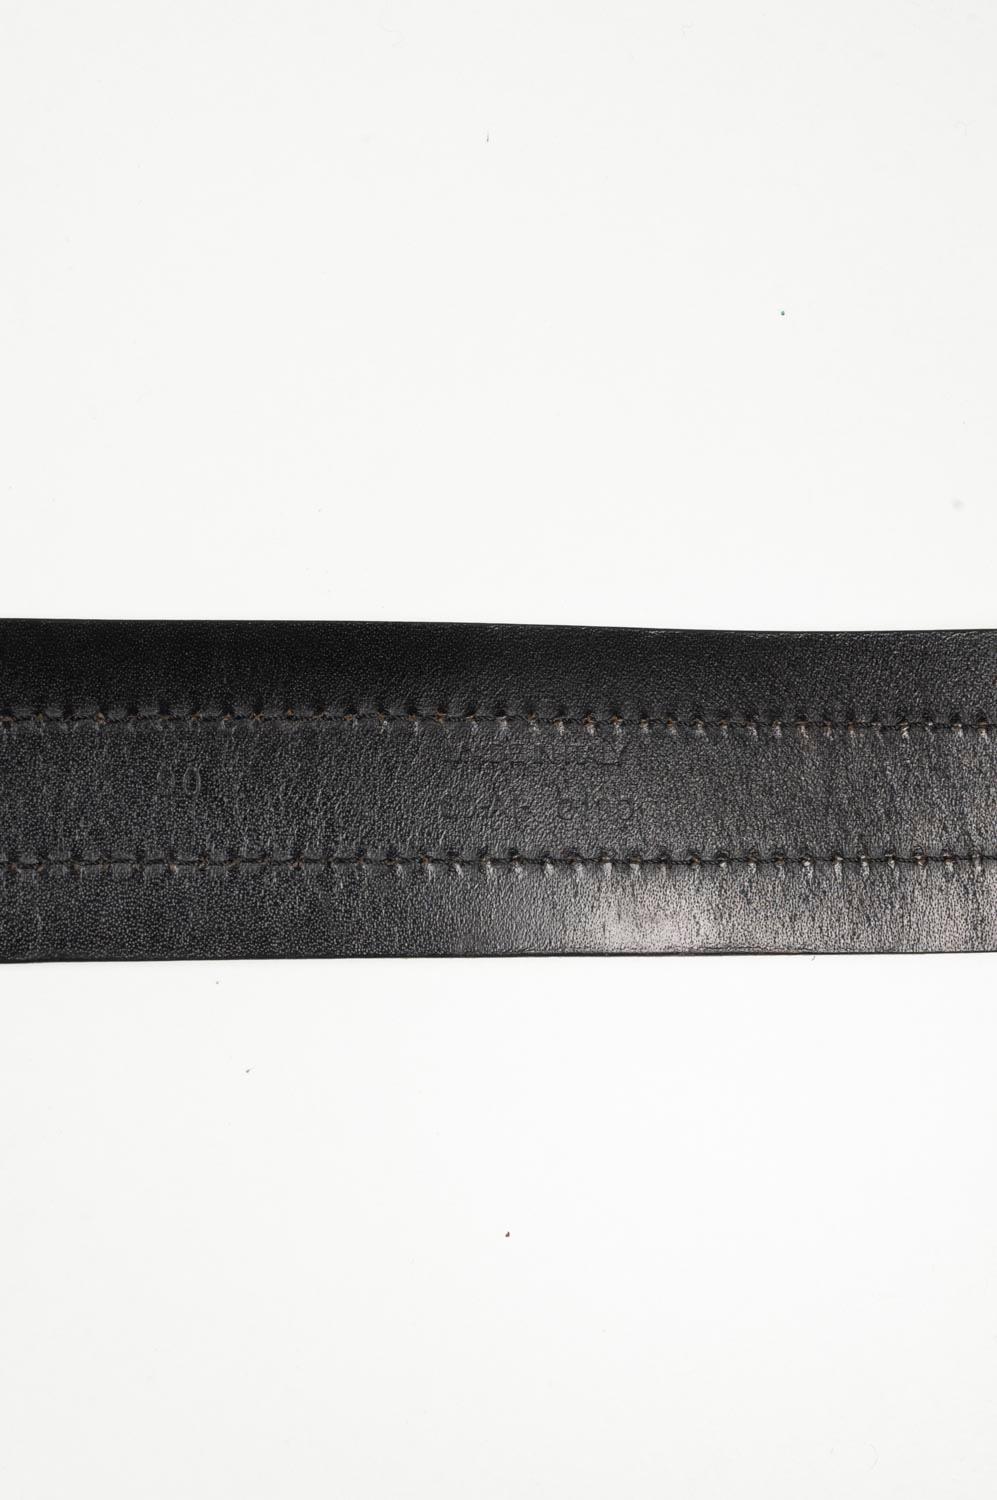 Dior Homme Men Leather Belt Size 90 (Medium) S534 For Sale 3